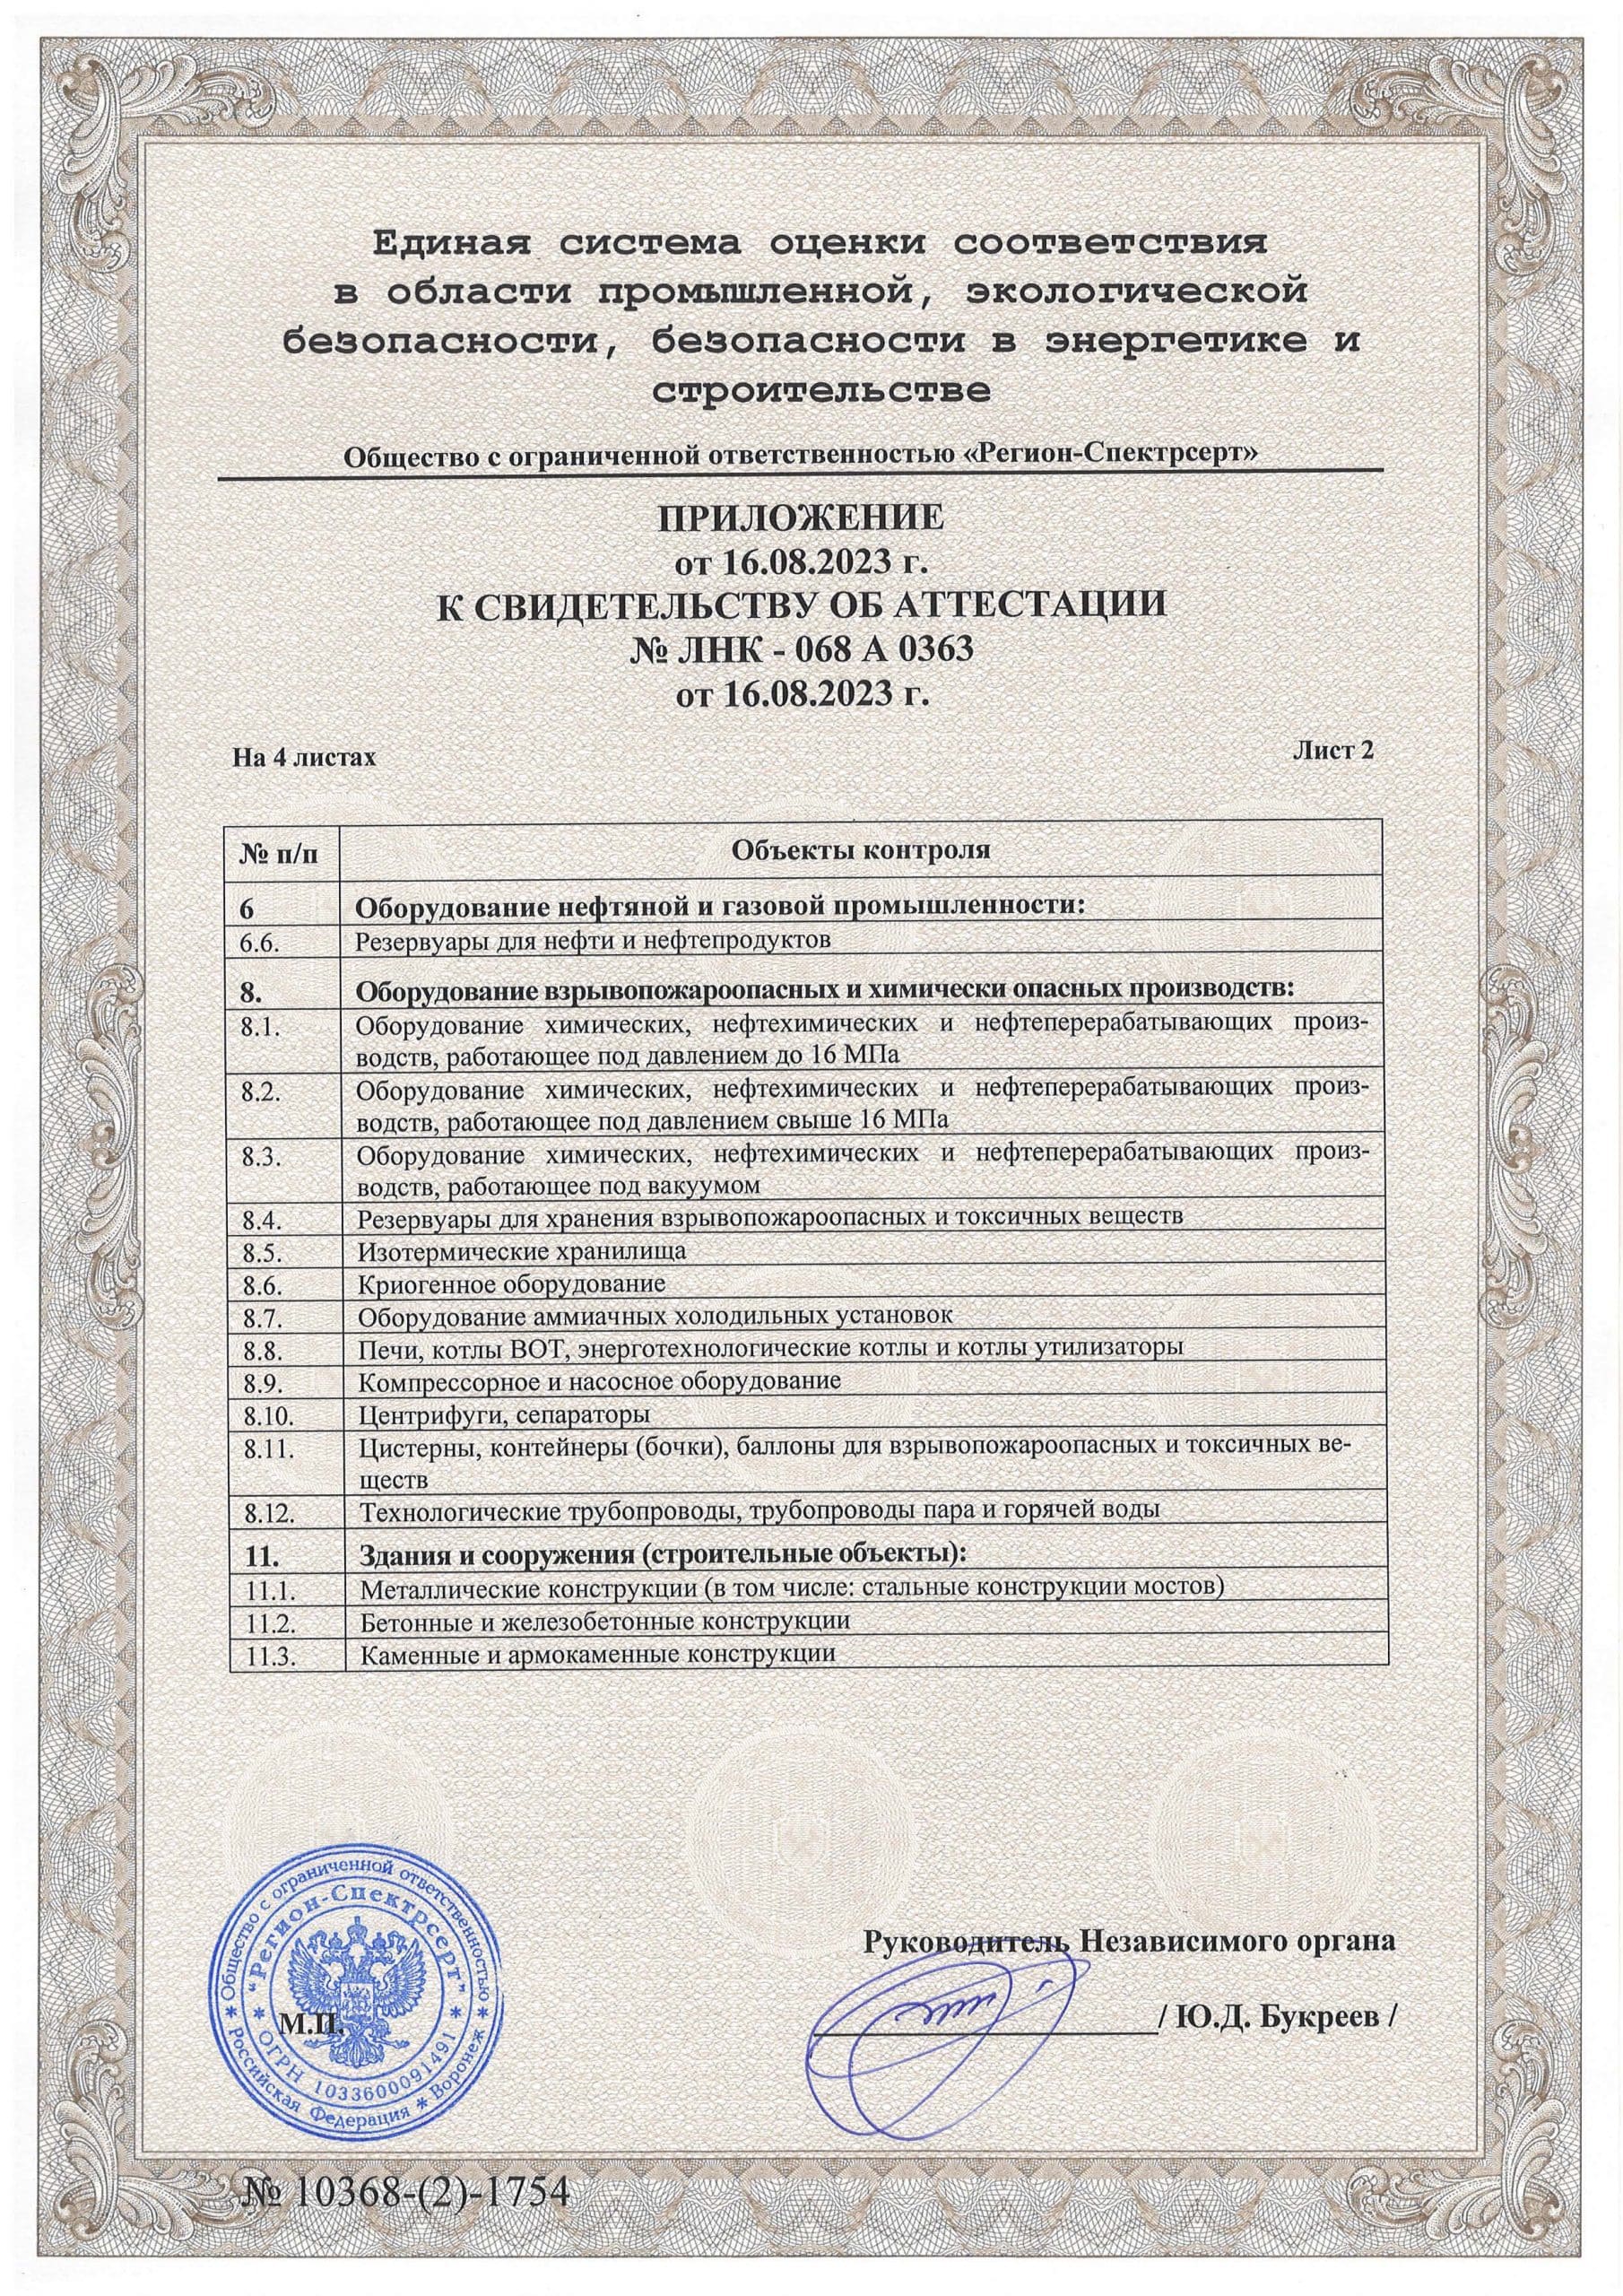 Приложение к свидетельству об аттестации СЭПБ СНК № ЛНК-068A0363 лист 2